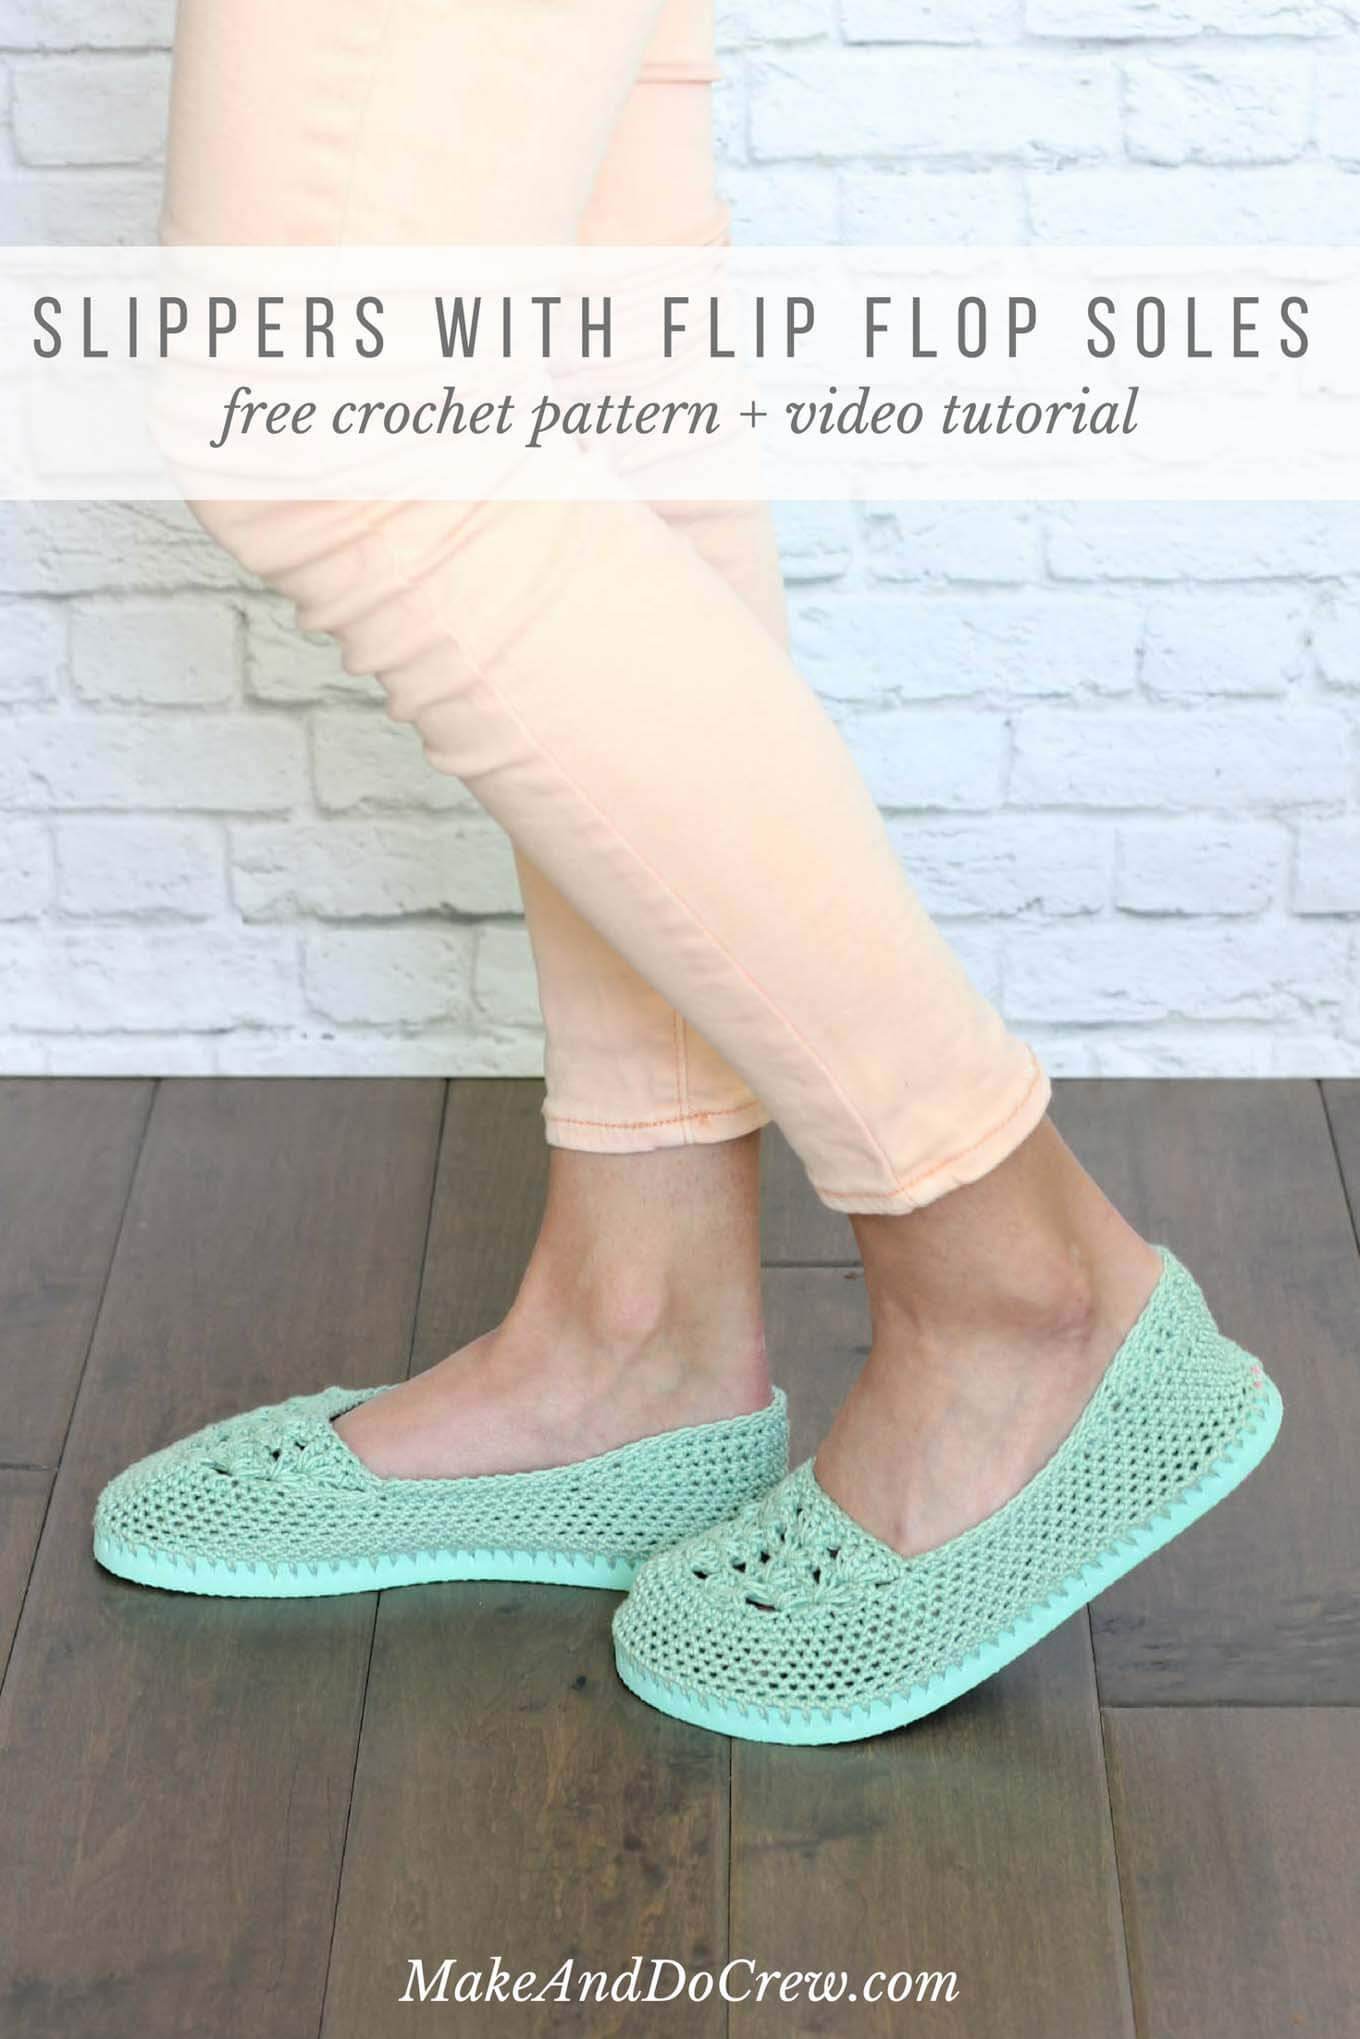 Easy Bed Socks Crochet Pattern Crochet Slippers With Flip Flop Soles Free Pattern Video Tutorial